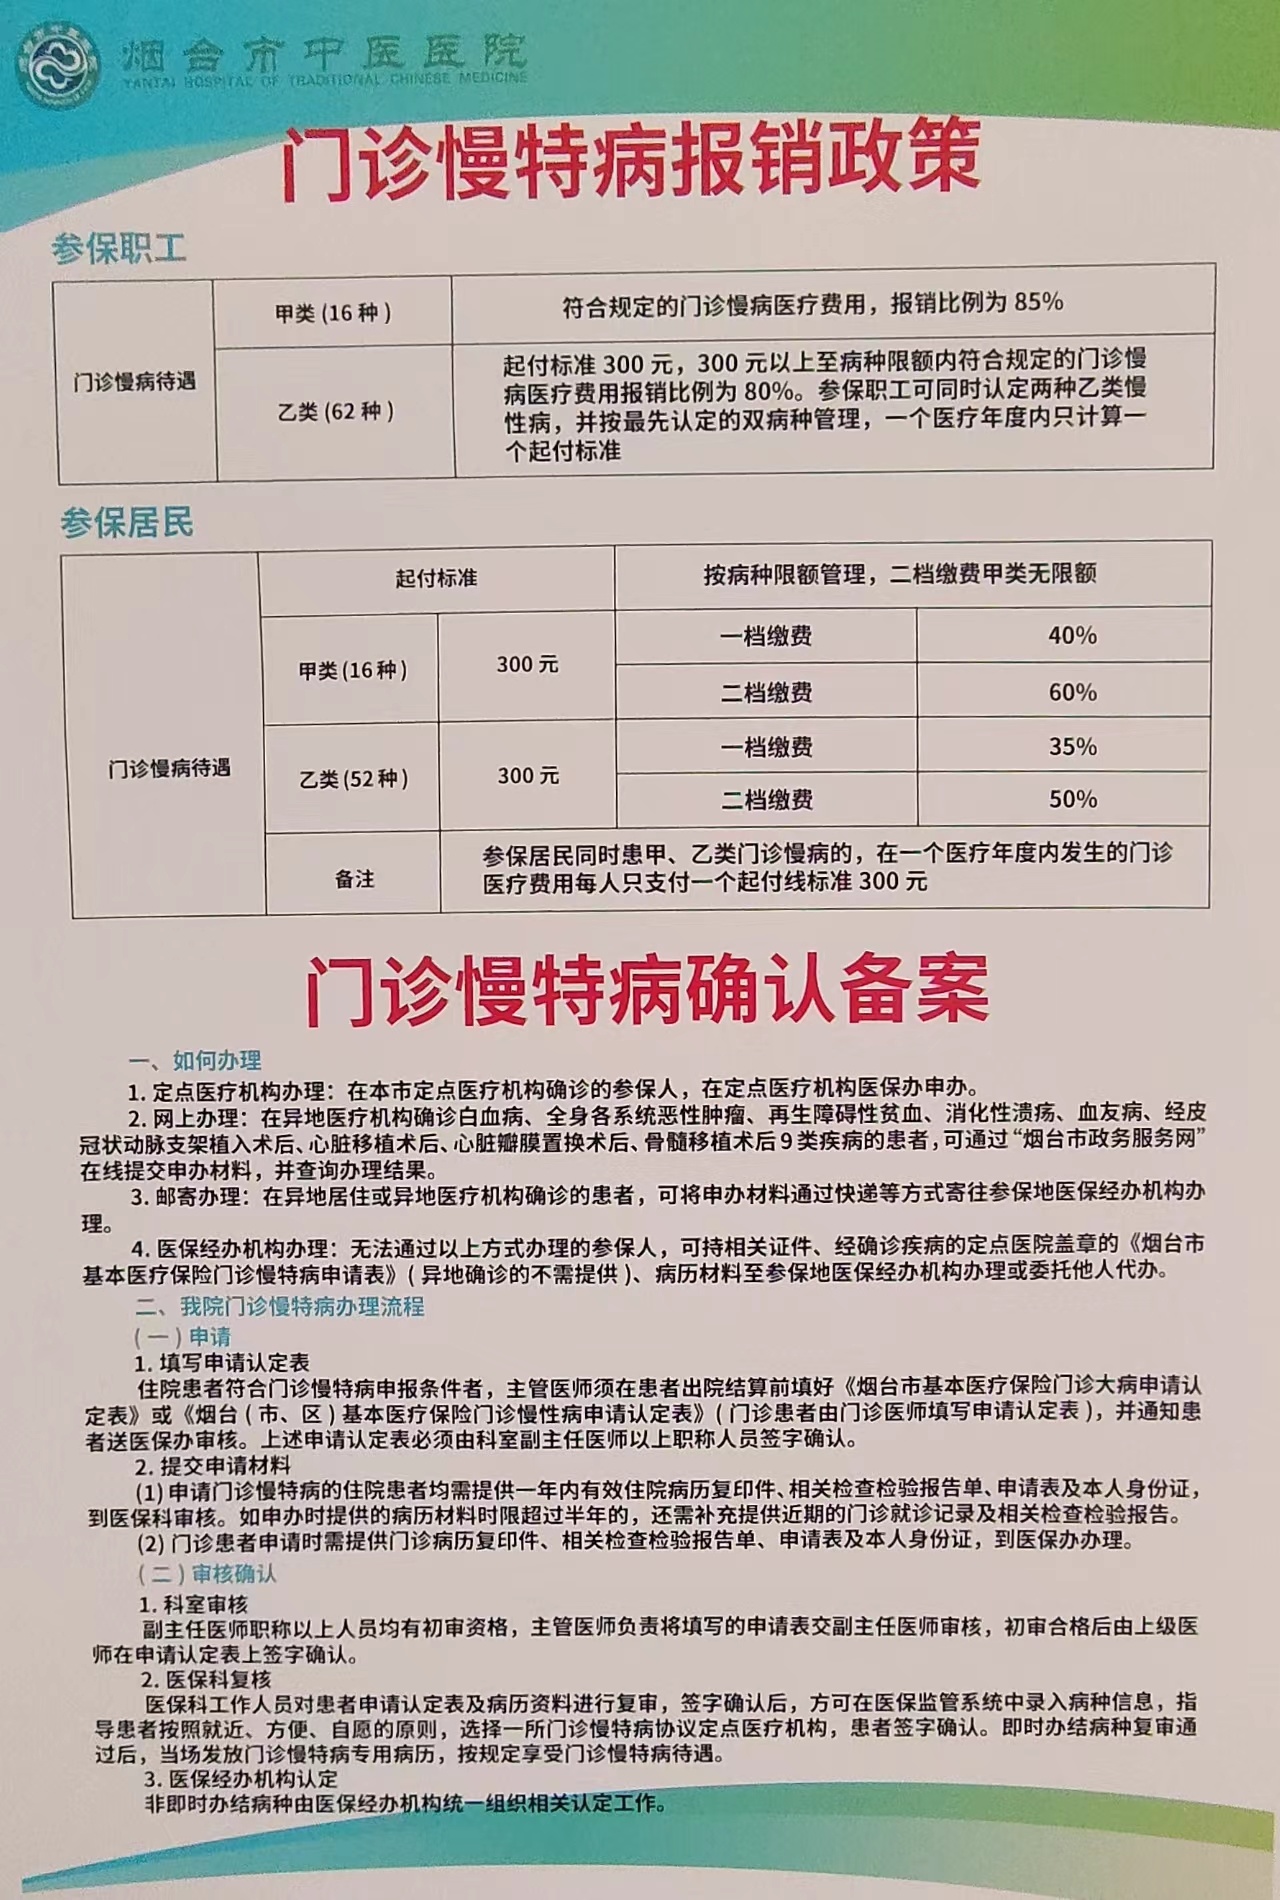 关于北京儿童医院快速就医黄牛挂号优先跑腿代处理住院的信息